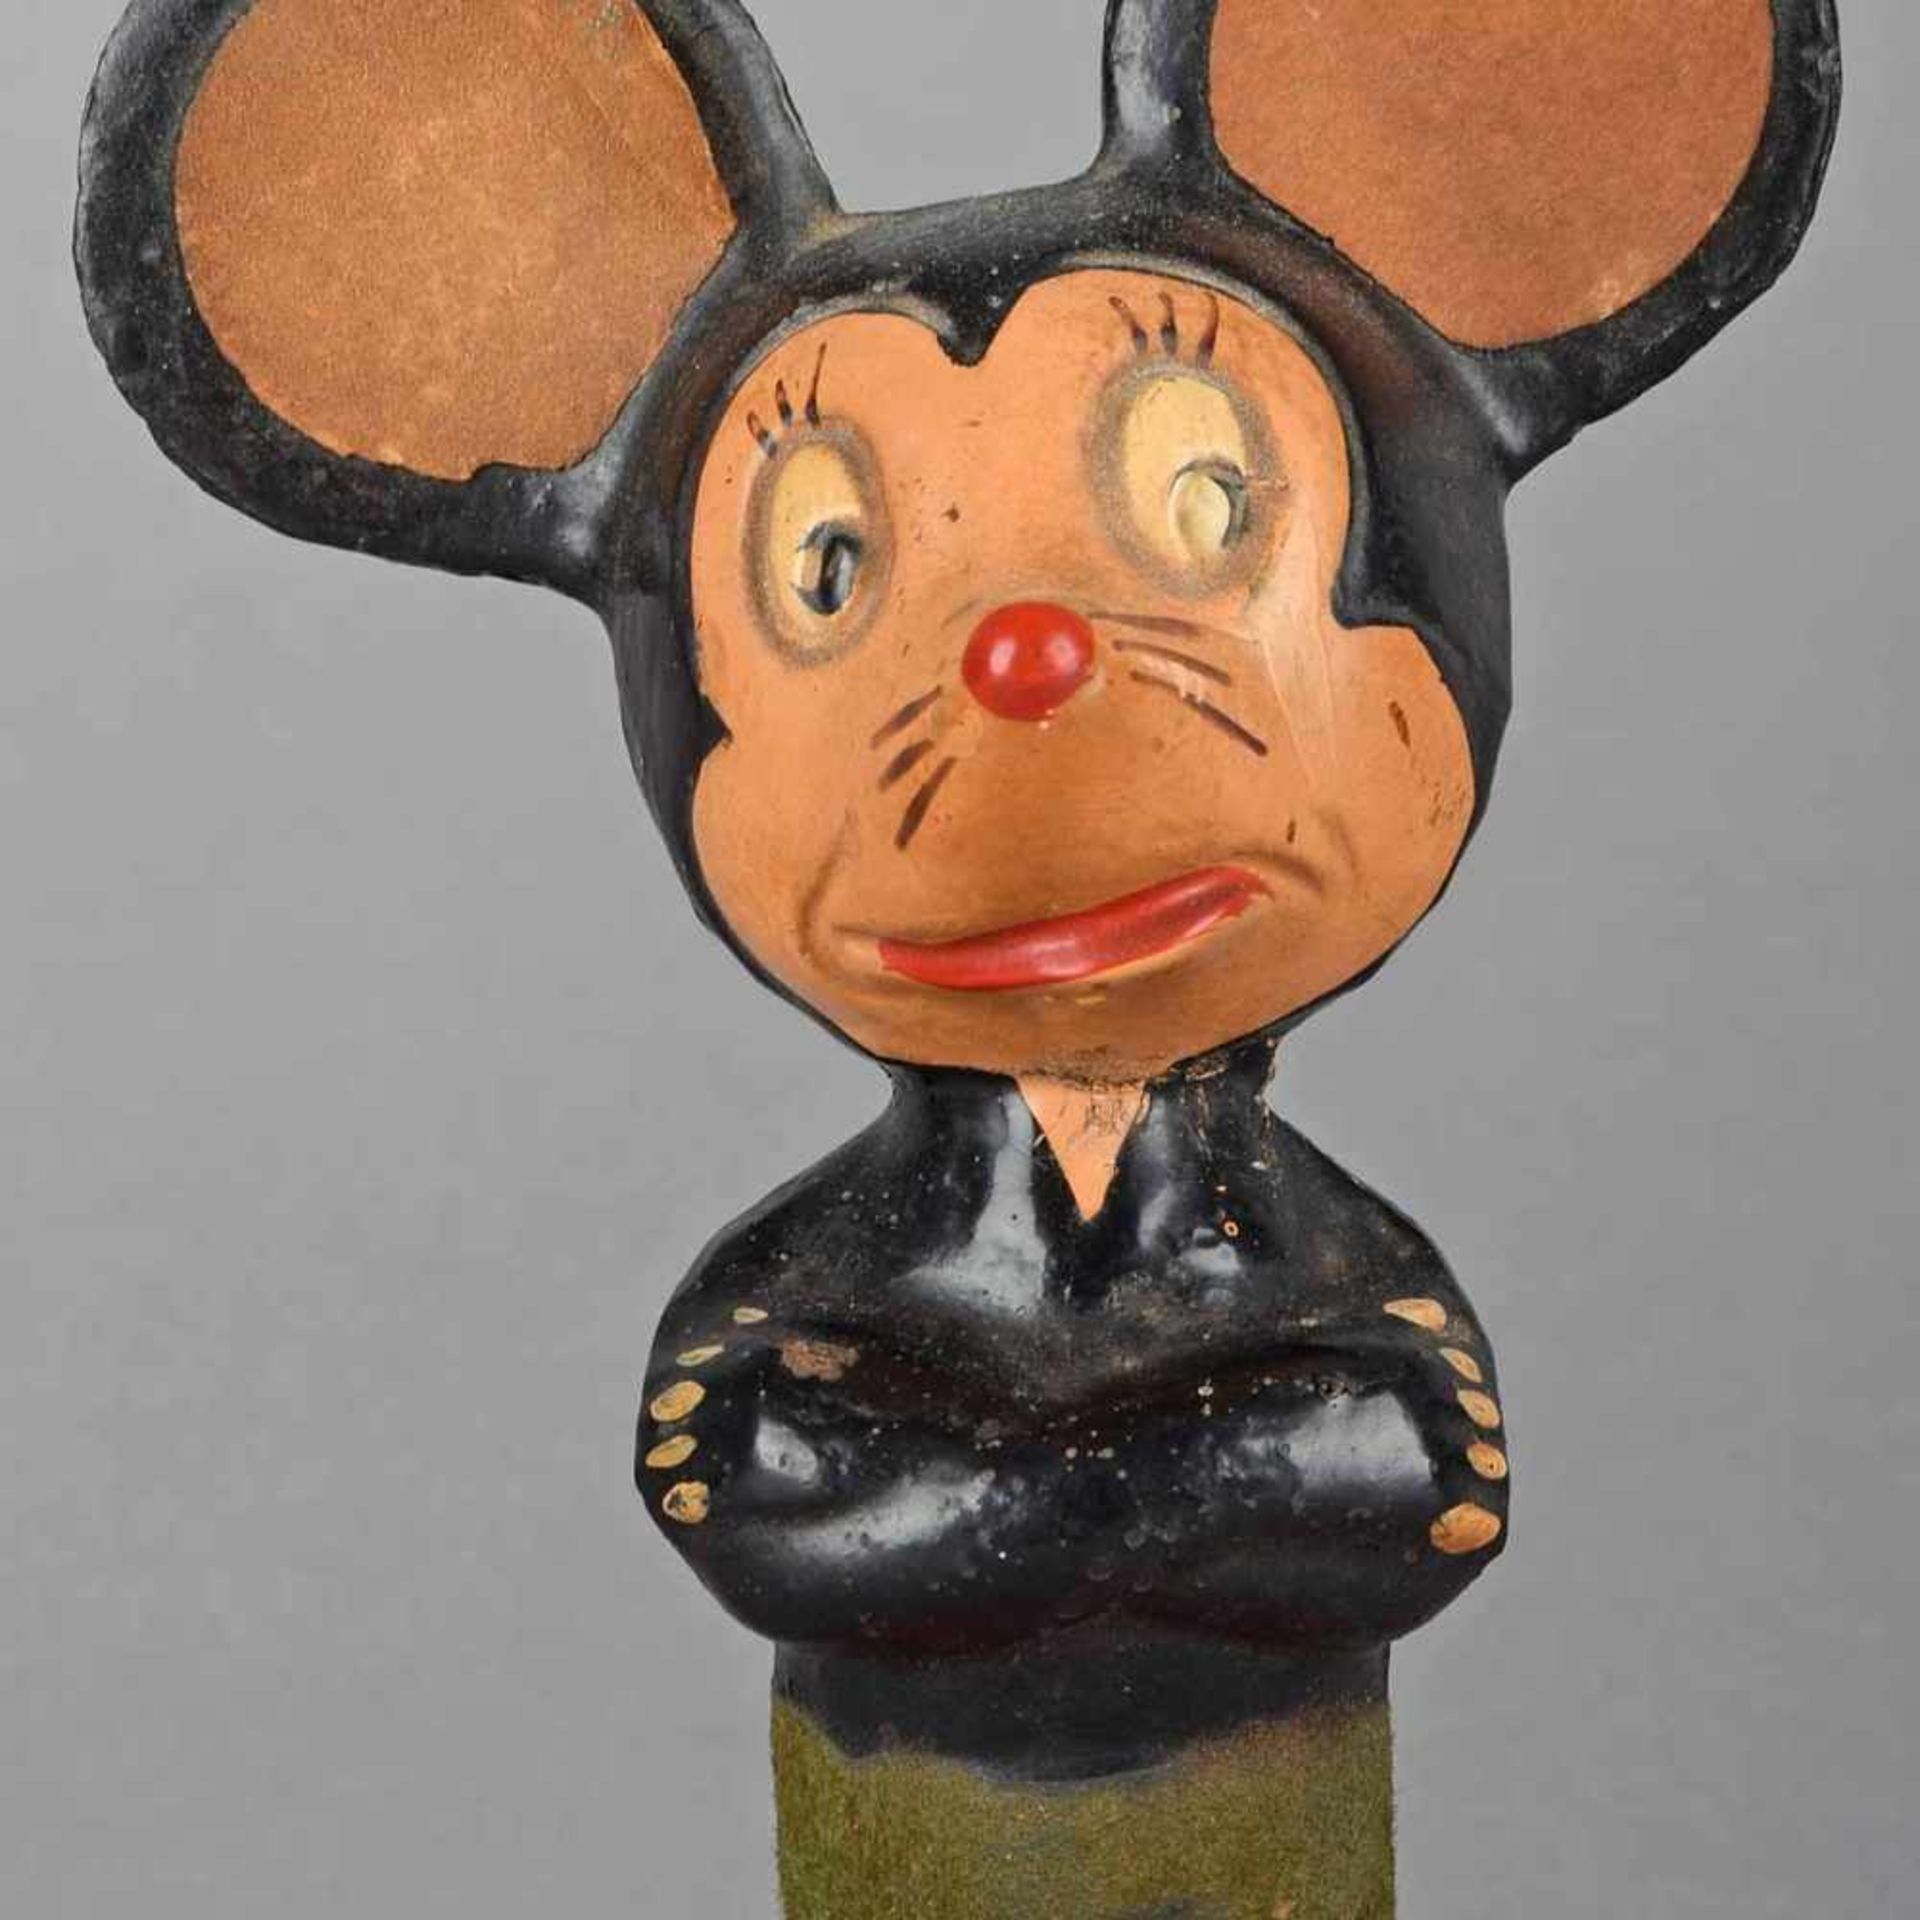 Mickeymausfigur Masse farbig gestaltet, insg. gute Erhaltung, H ca. 14 cm, 1940/50er Jahre